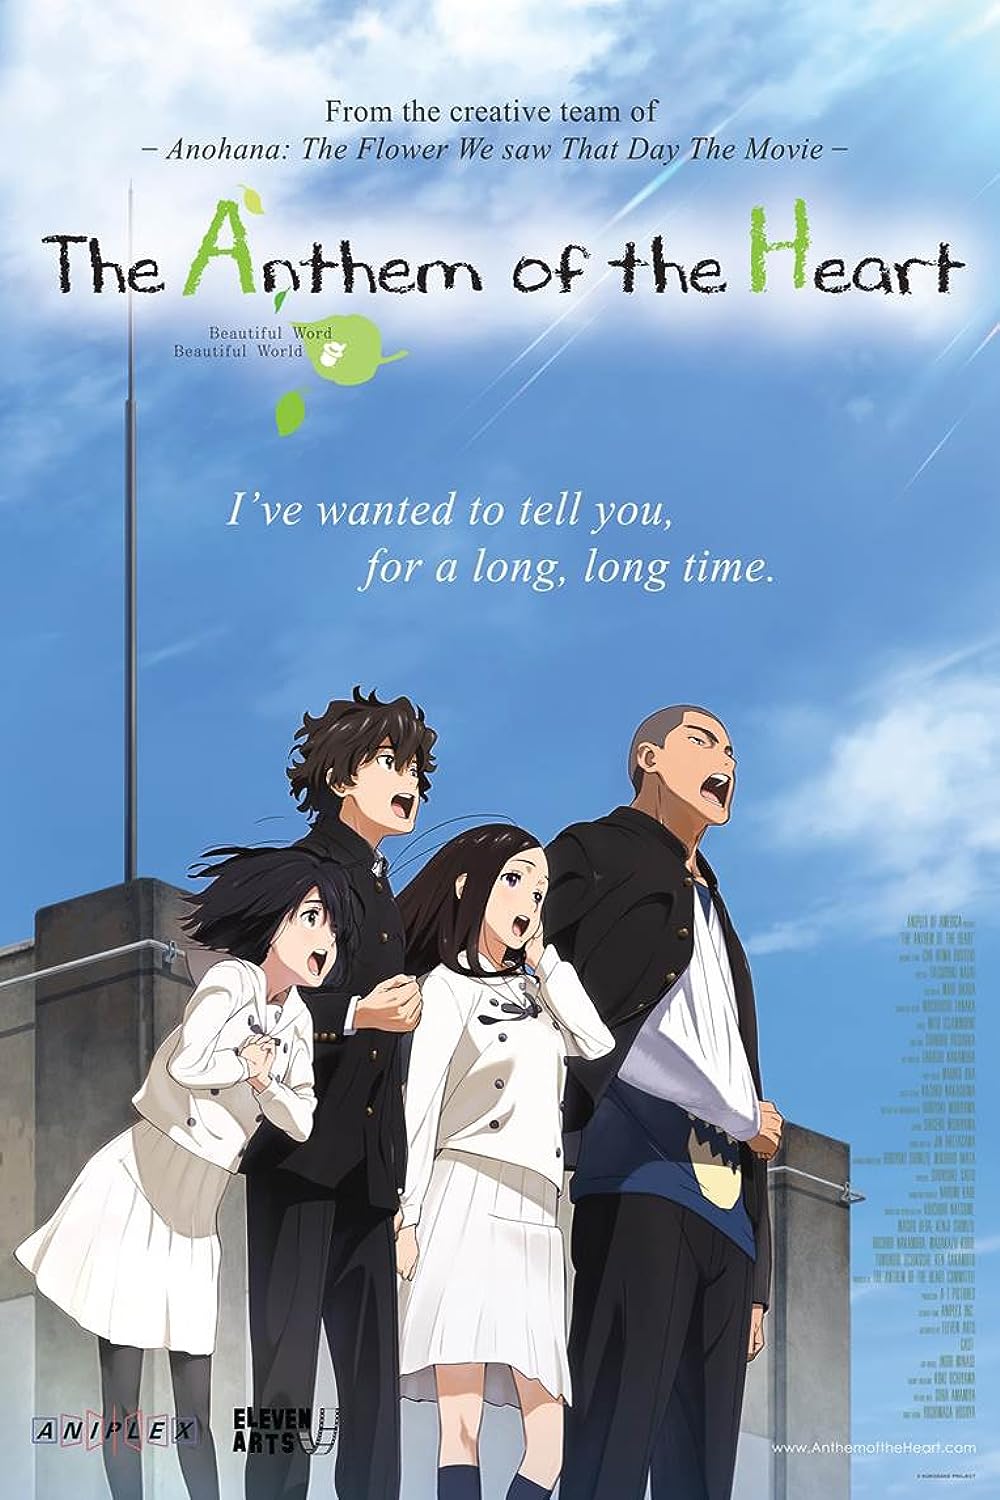 Best Romance Anime Movies